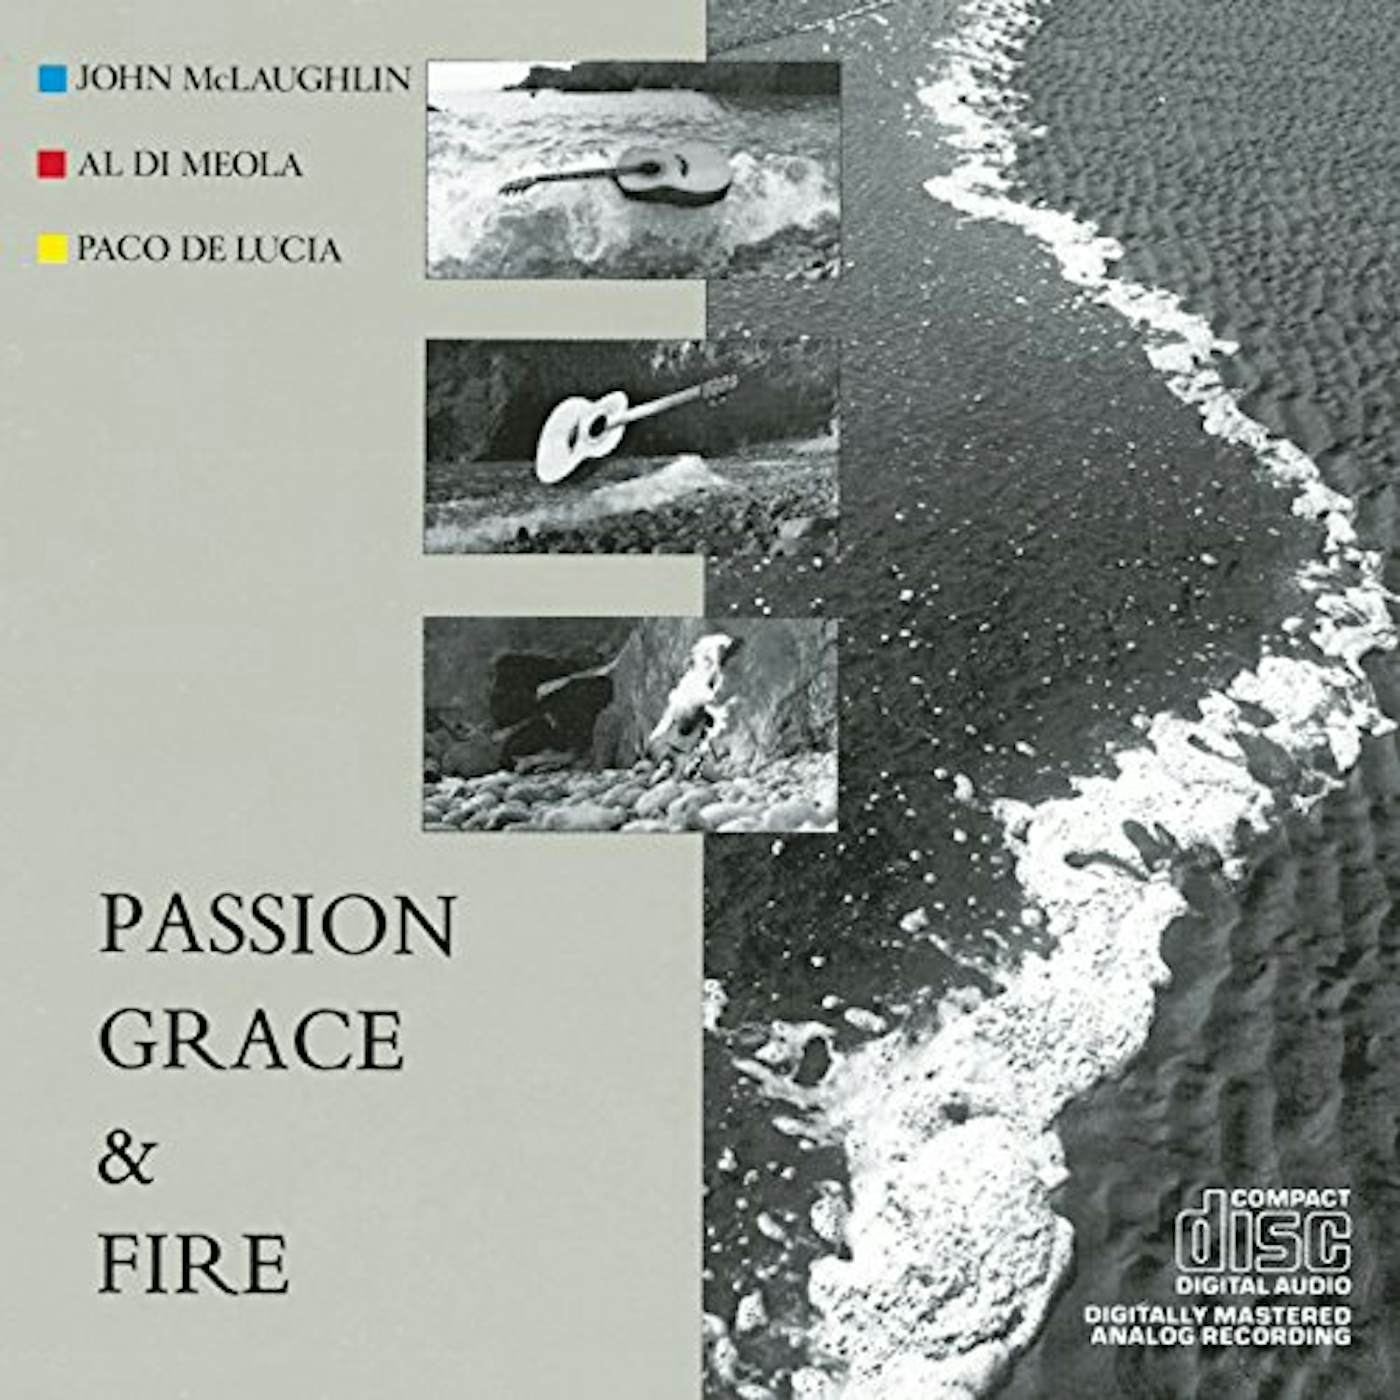 John McLaughlin Passion, Grace & Fire Vinyl Record